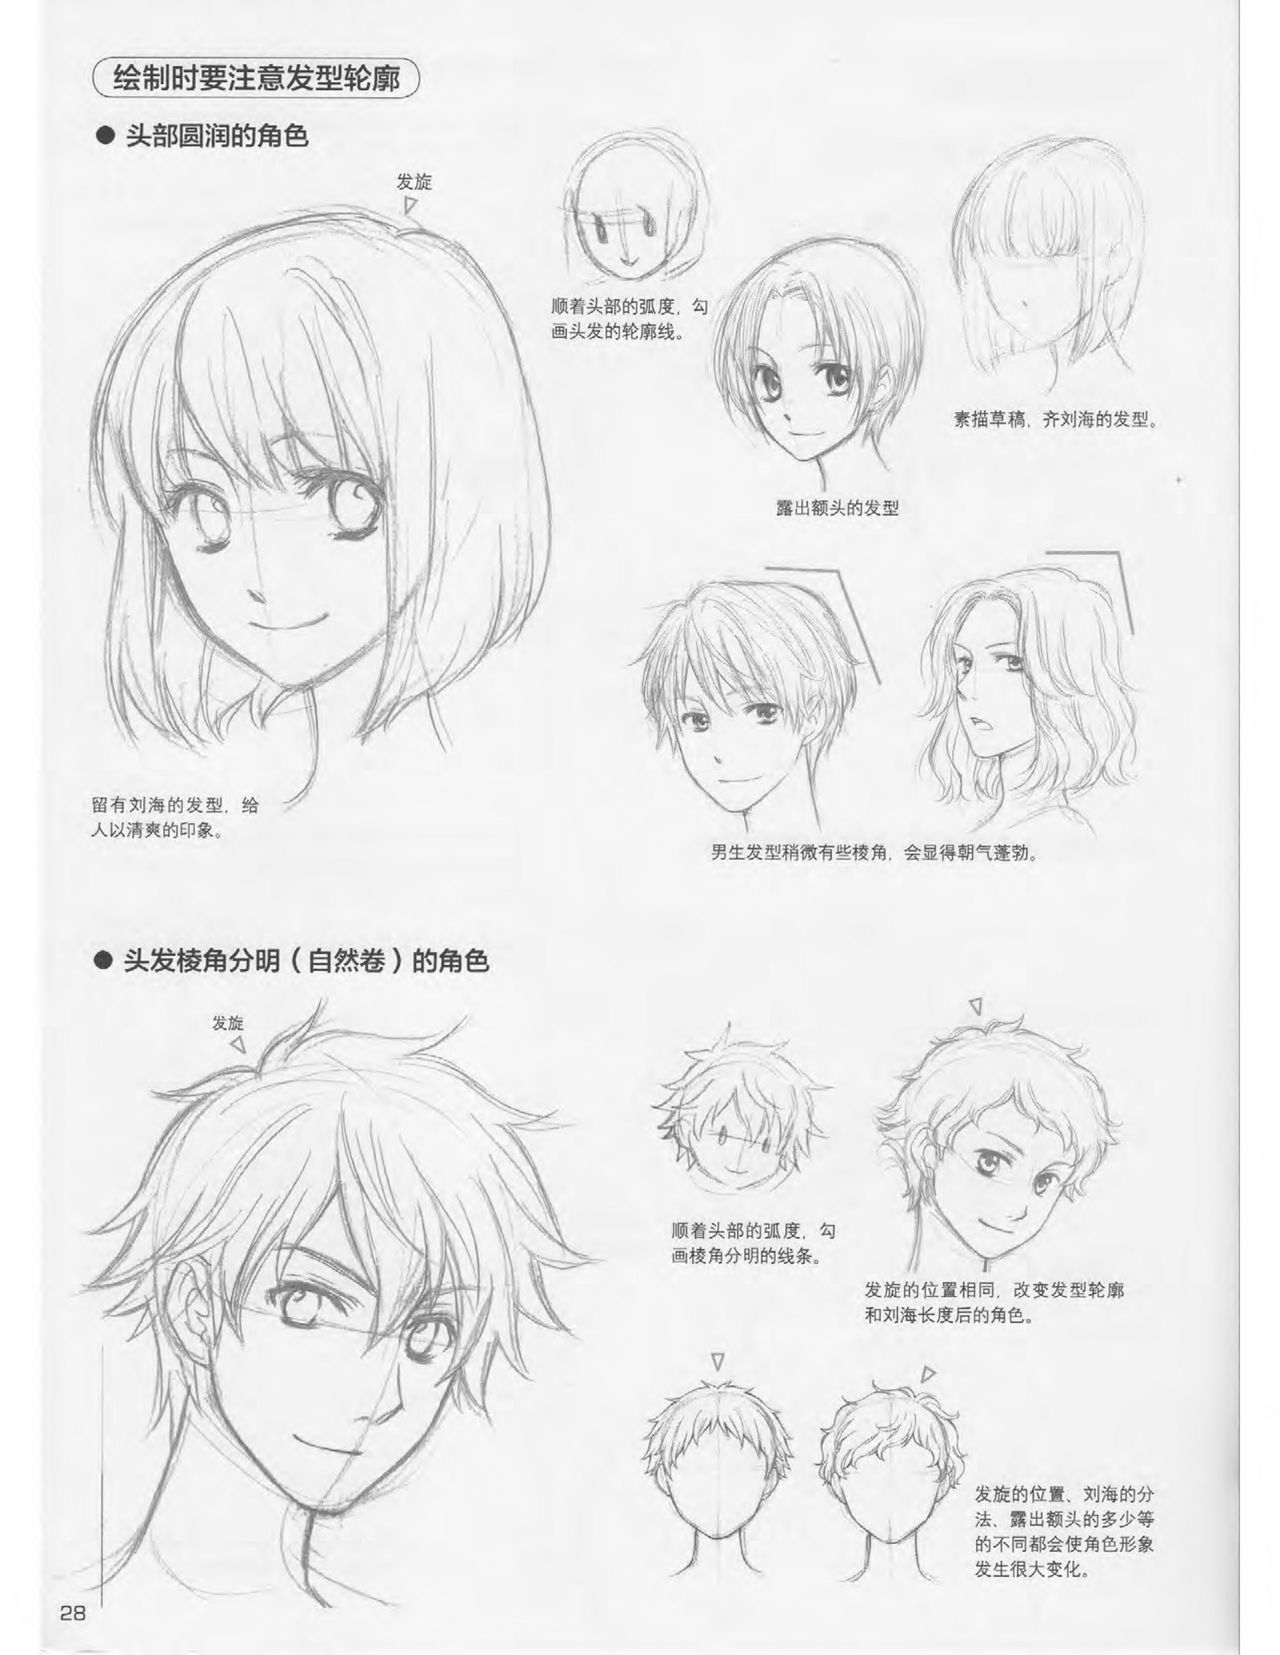 Japanese Manga Master Lecture 3: Lin Akira and Kakumaru Maru Talk About Glamorous Character Modeling 28